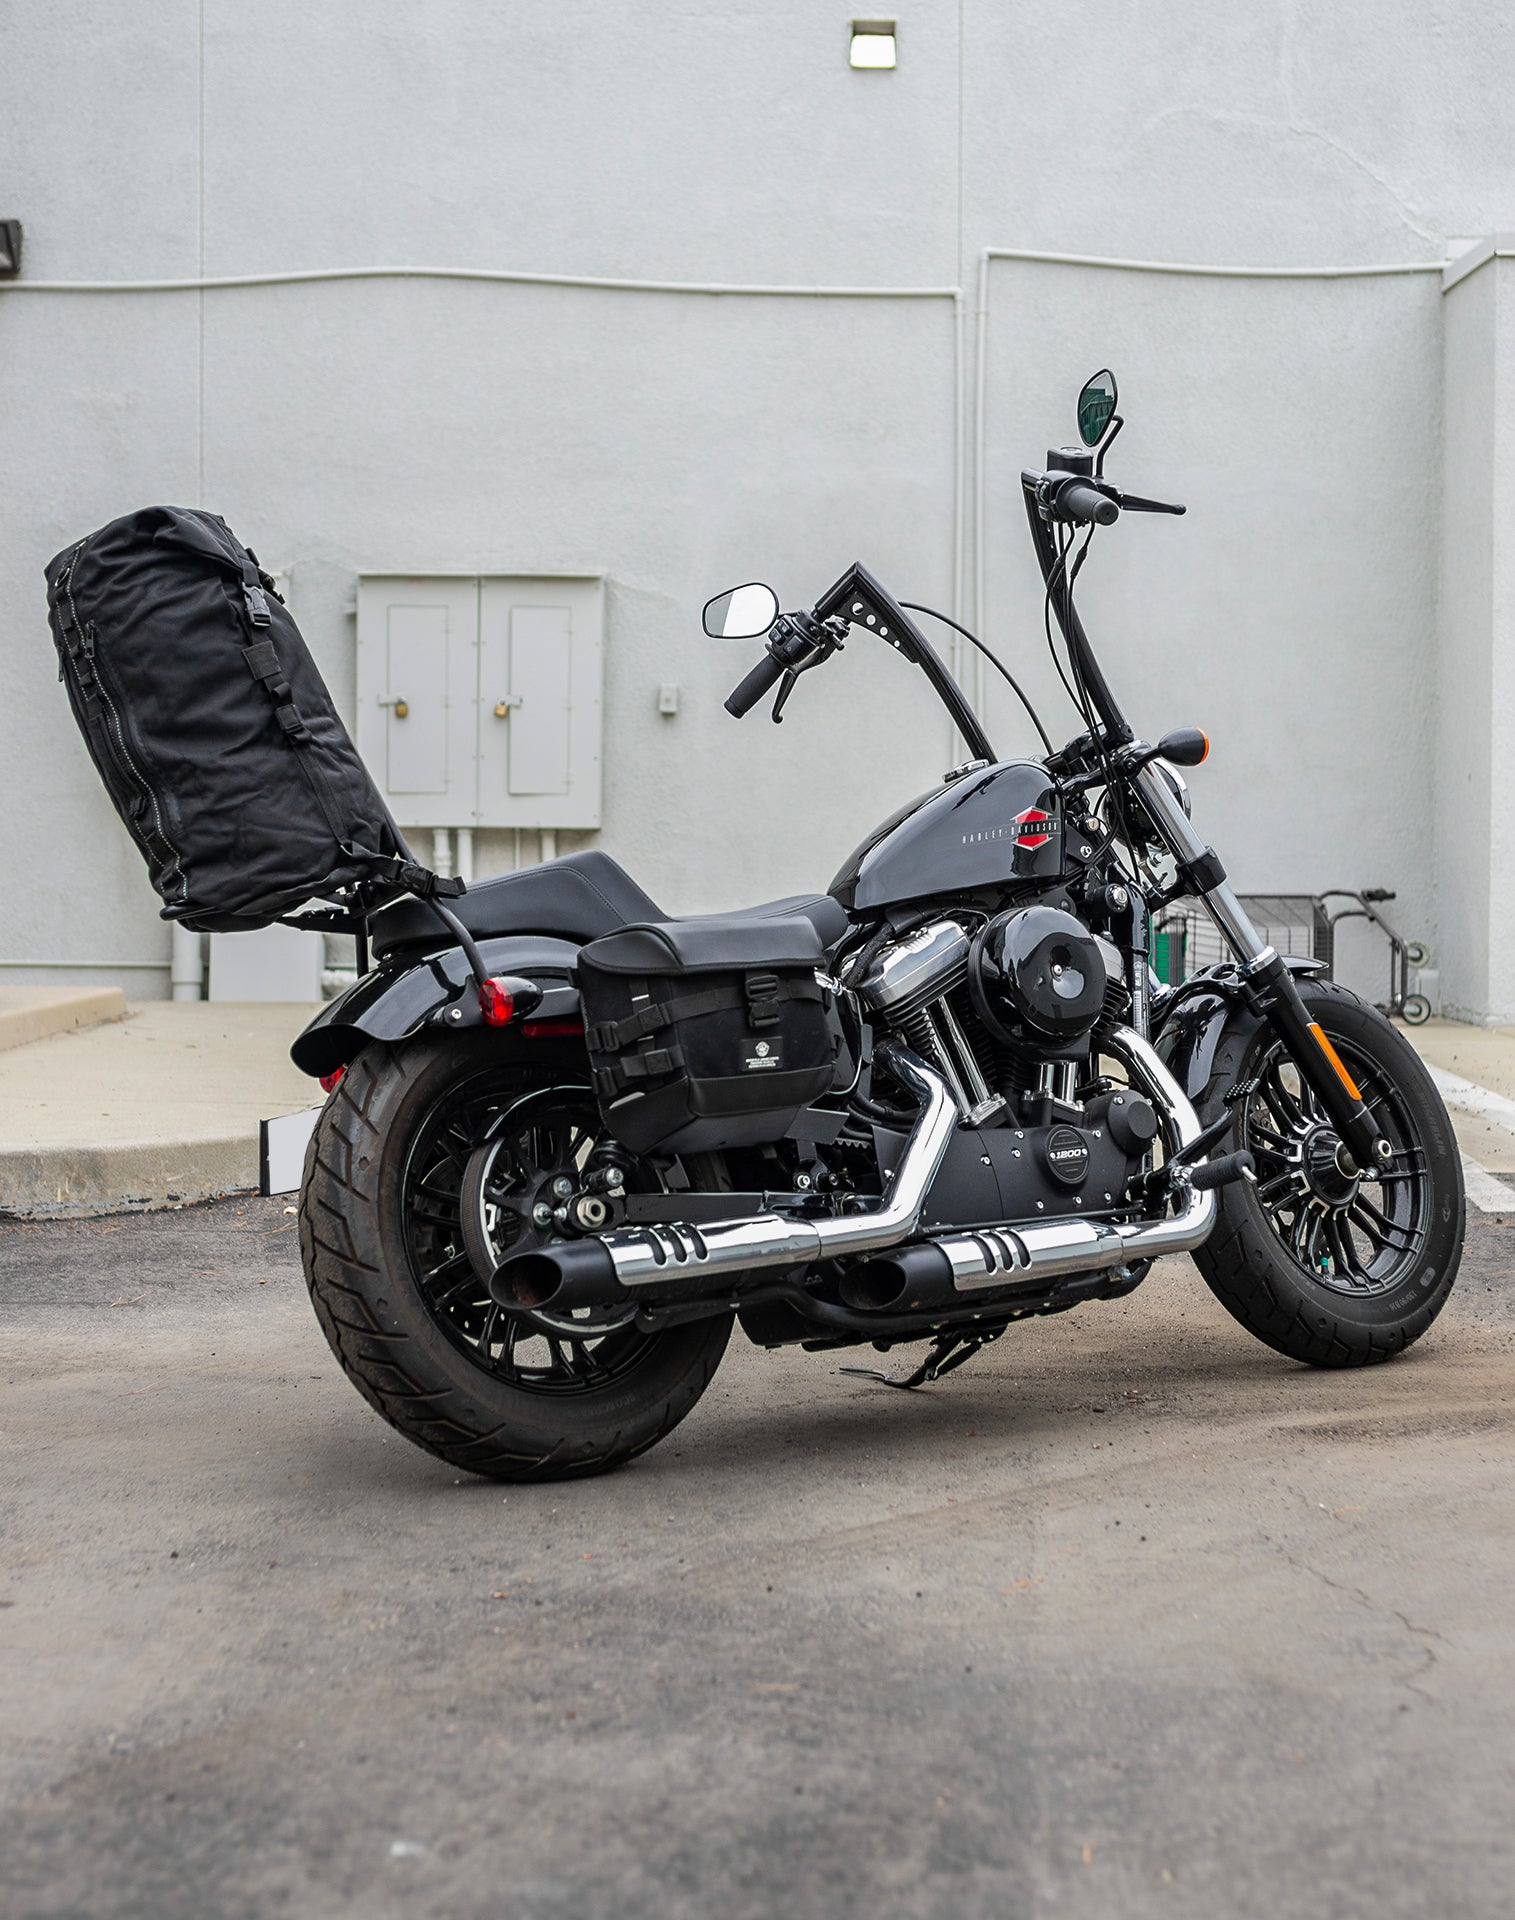 35L - Renegade XL Indian Motorcycle Tail Bag